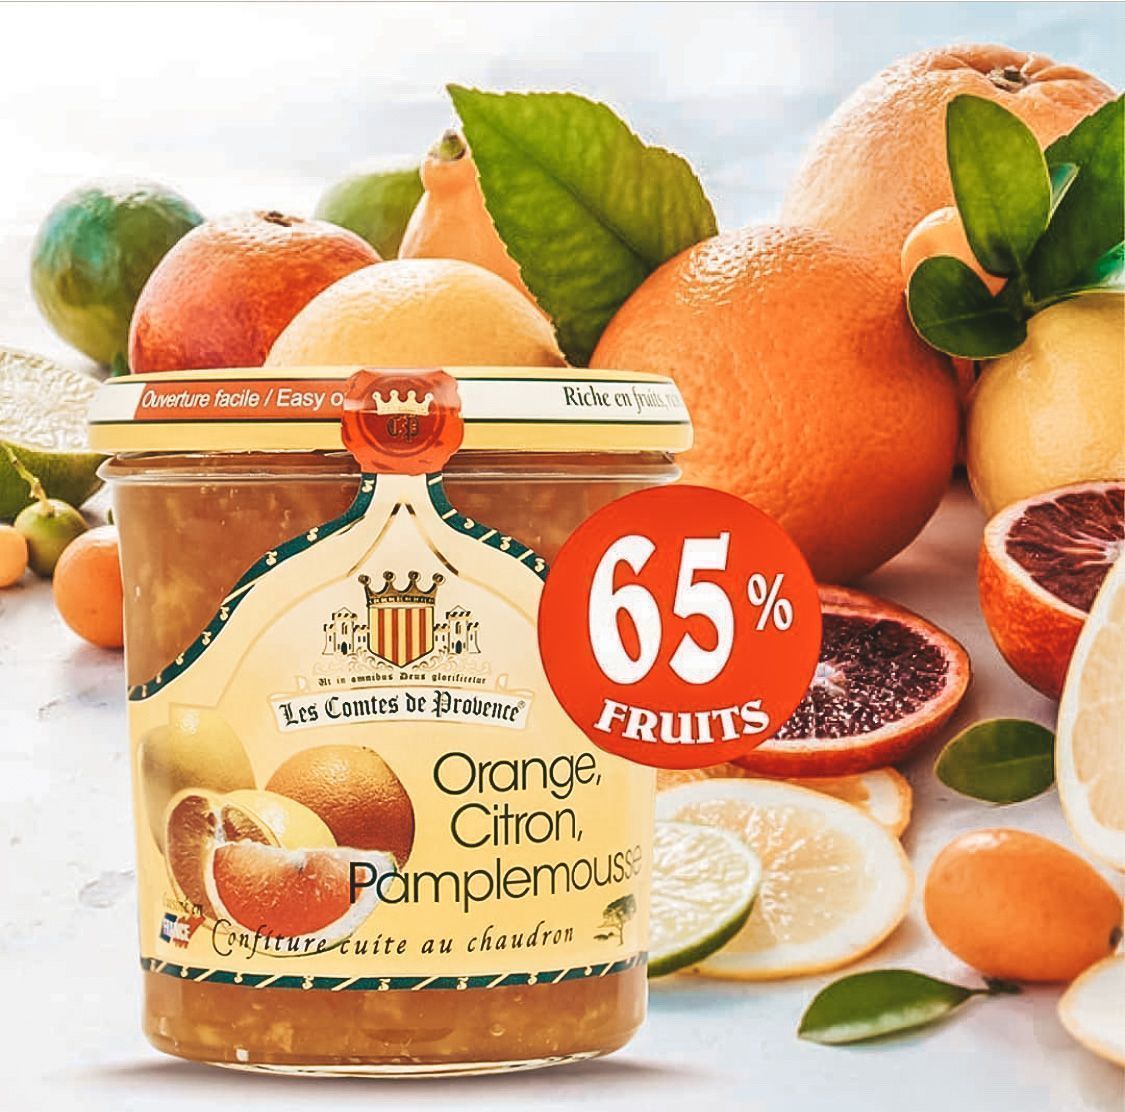 Джем Les Comtes de Provence из апельсина, лимона и грейпфрута, 340гр, 65% фруктов